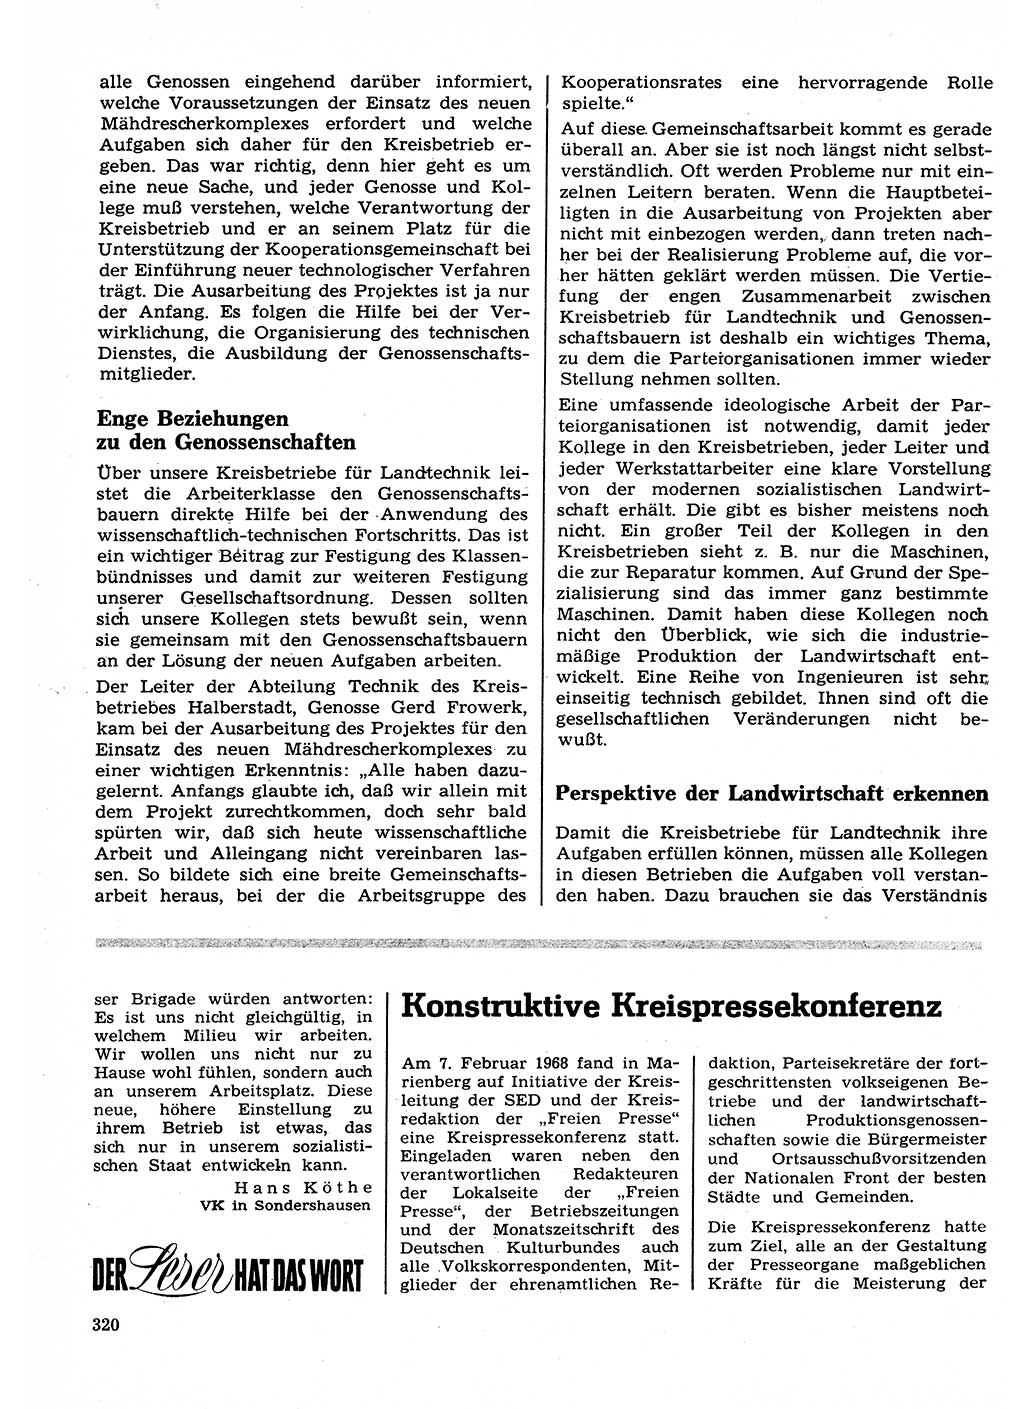 Neuer Weg (NW), Organ des Zentralkomitees (ZK) der SED (Sozialistische Einheitspartei Deutschlands) für Fragen des Parteilebens, 23. Jahrgang [Deutsche Demokratische Republik (DDR)] 1968, Seite 320 (NW ZK SED DDR 1968, S. 320)